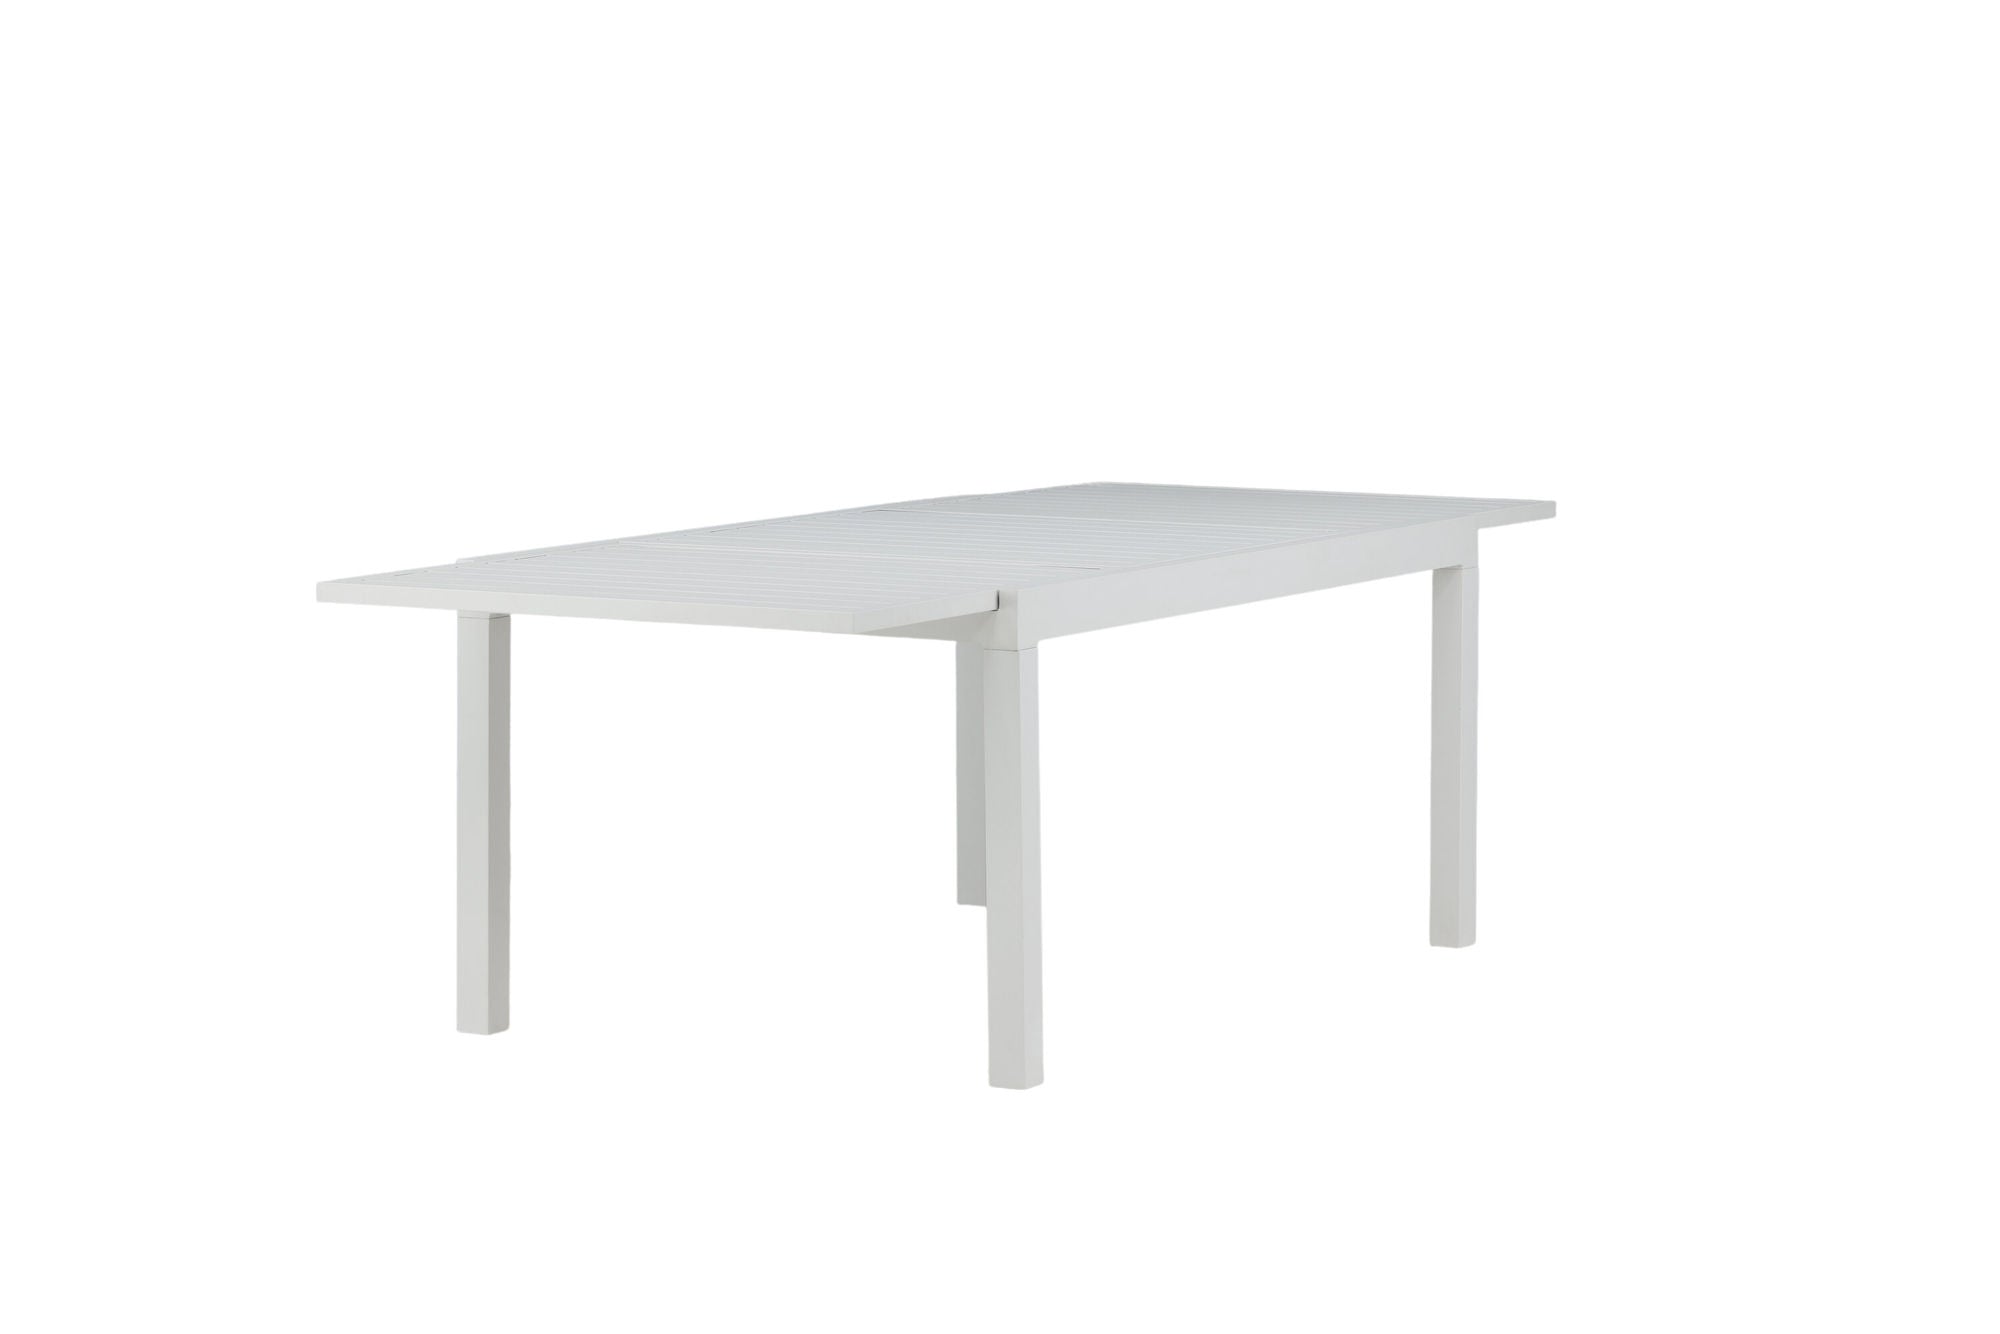 Venture Home Marbella Table 160/240 - White/White